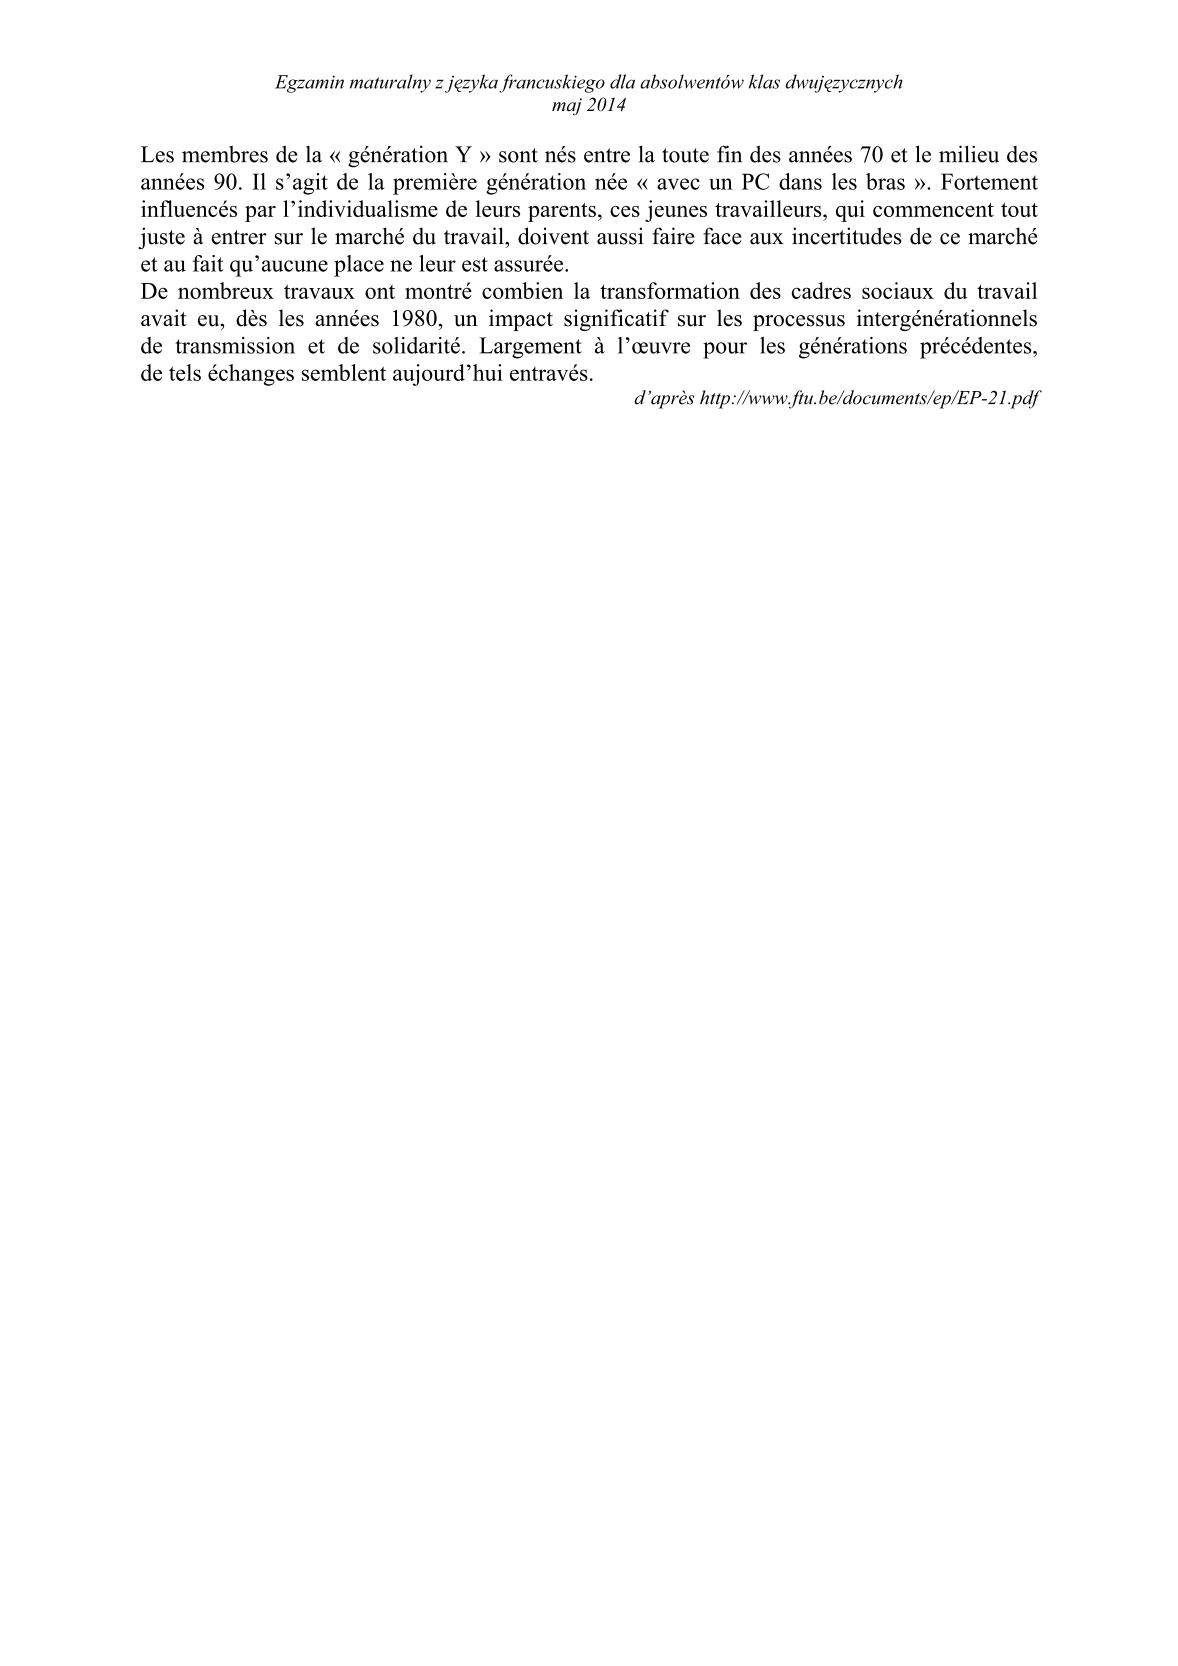 transkrypcja-jezyk-francuski-dla-absolwentow-klas-dwujezycznych-matura-2014-str.4